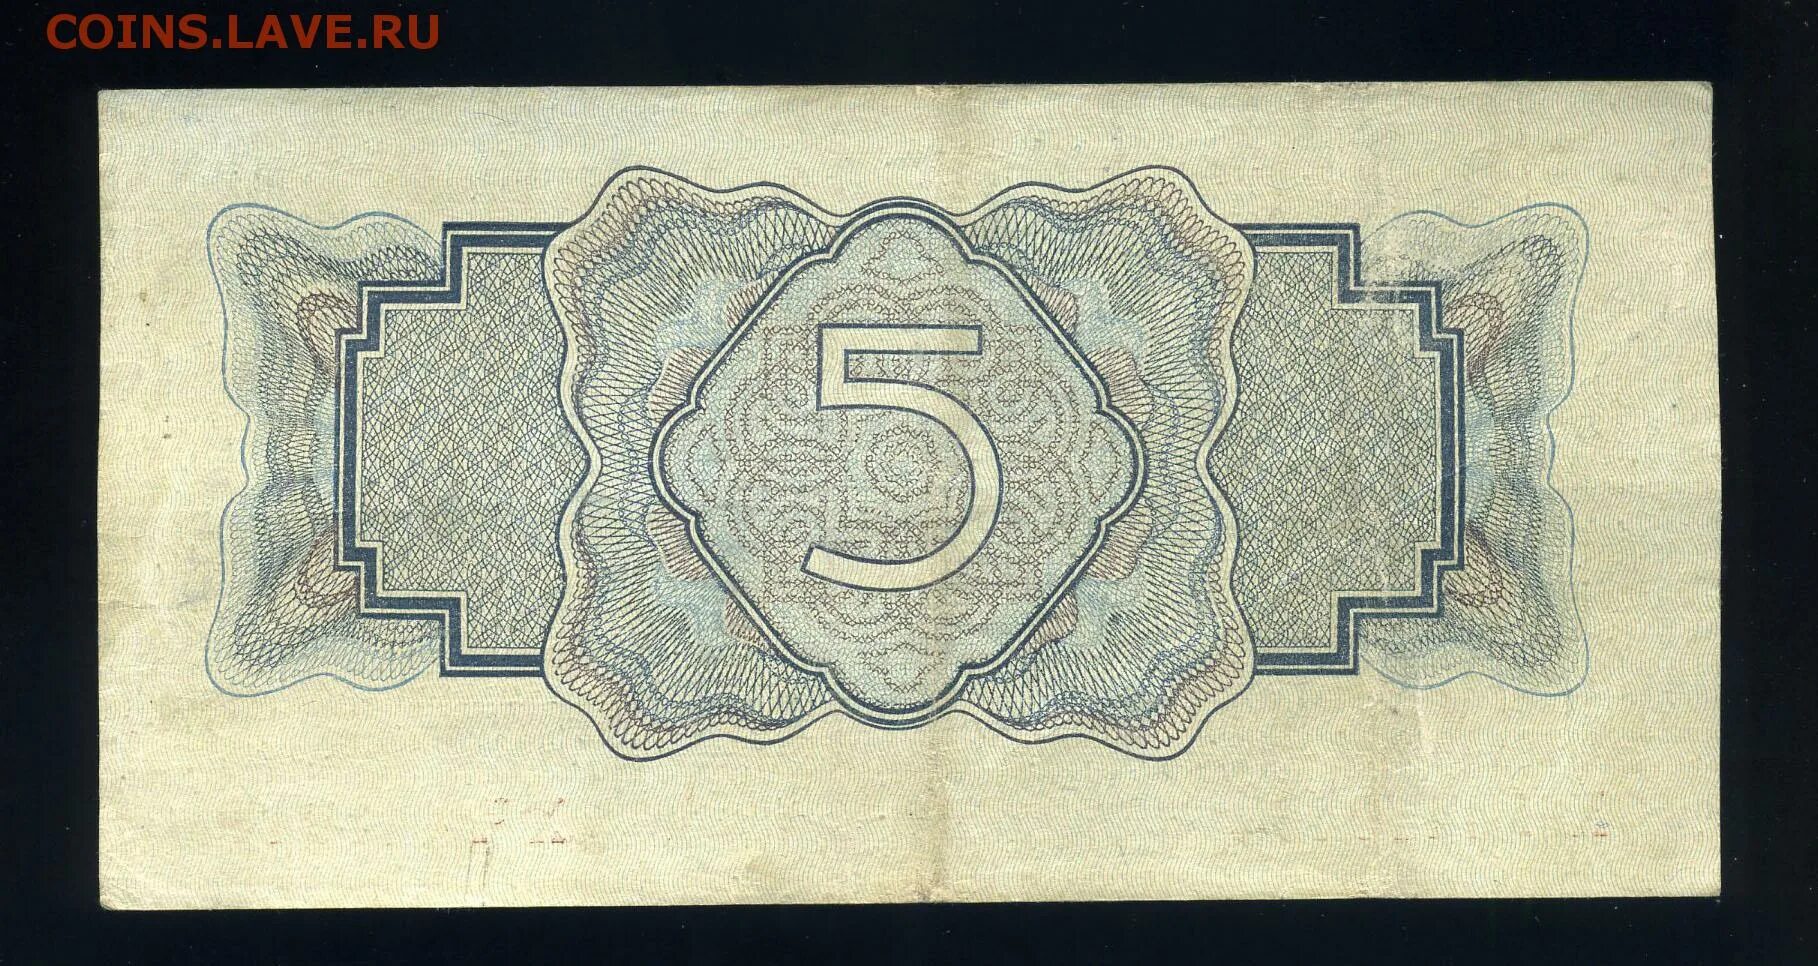 5 от 1700. 5 Рублей 1934. 5 Рублей 1925 года. Бумажный рубль 1934 года. Денежный знак 5 рублей 1925.